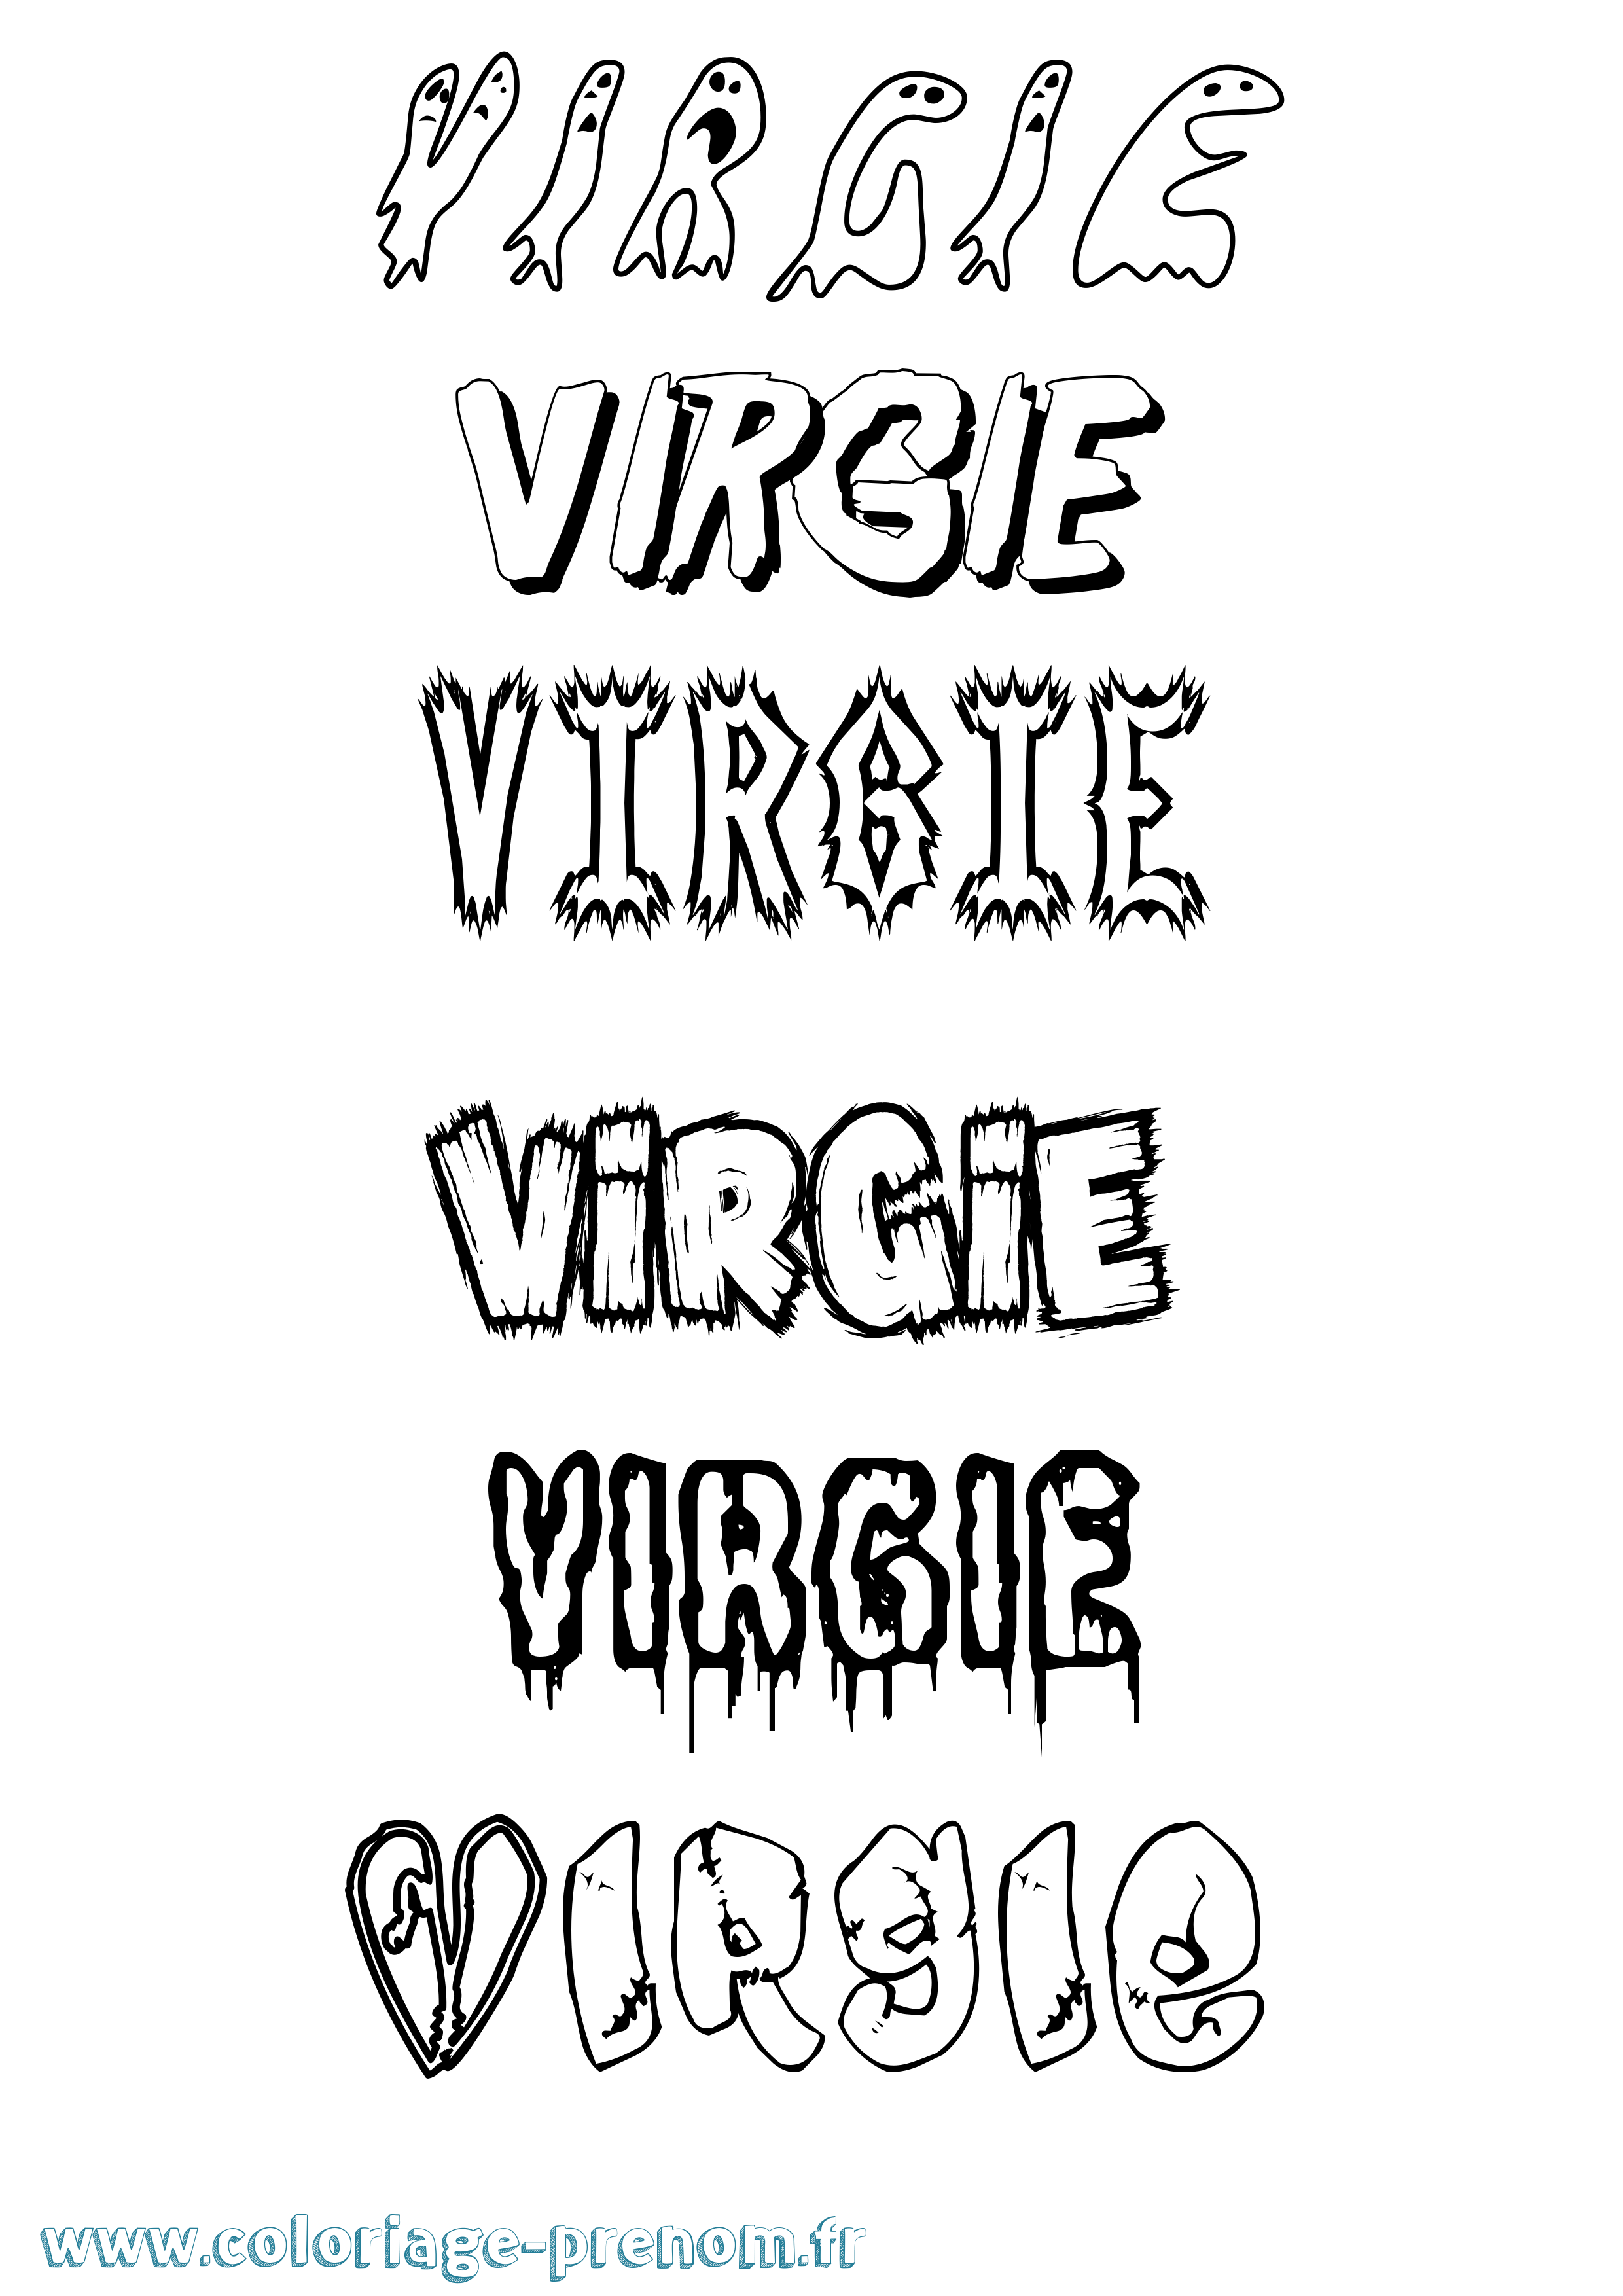 Coloriage prénom Virgie Frisson